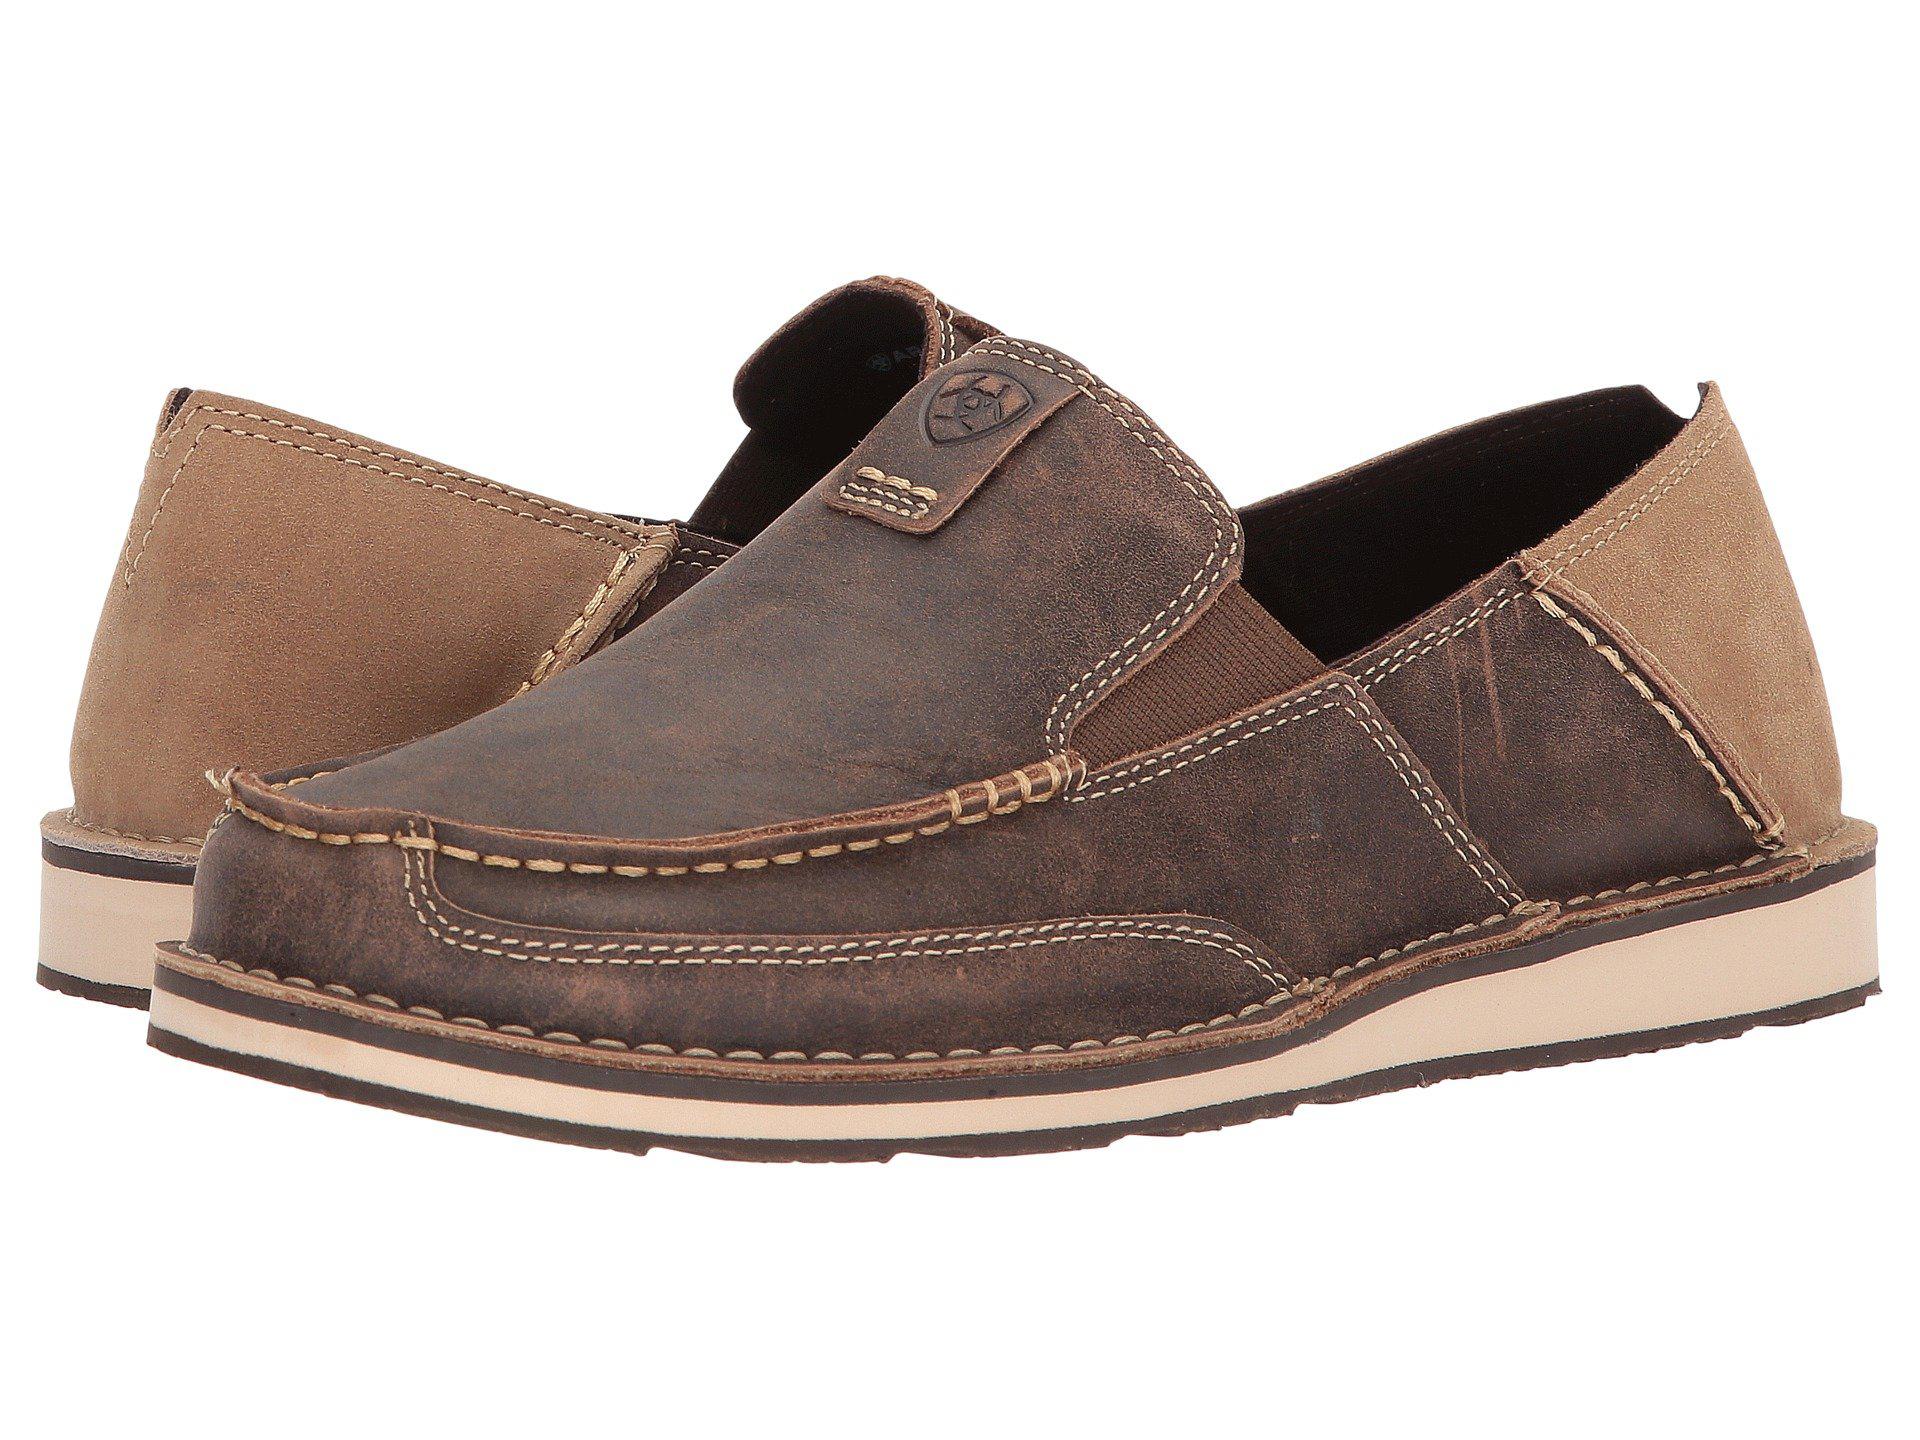 Lyst - Ariat Cruiser (aged Bark) Men's Slip On Shoes in Brown for Men ...